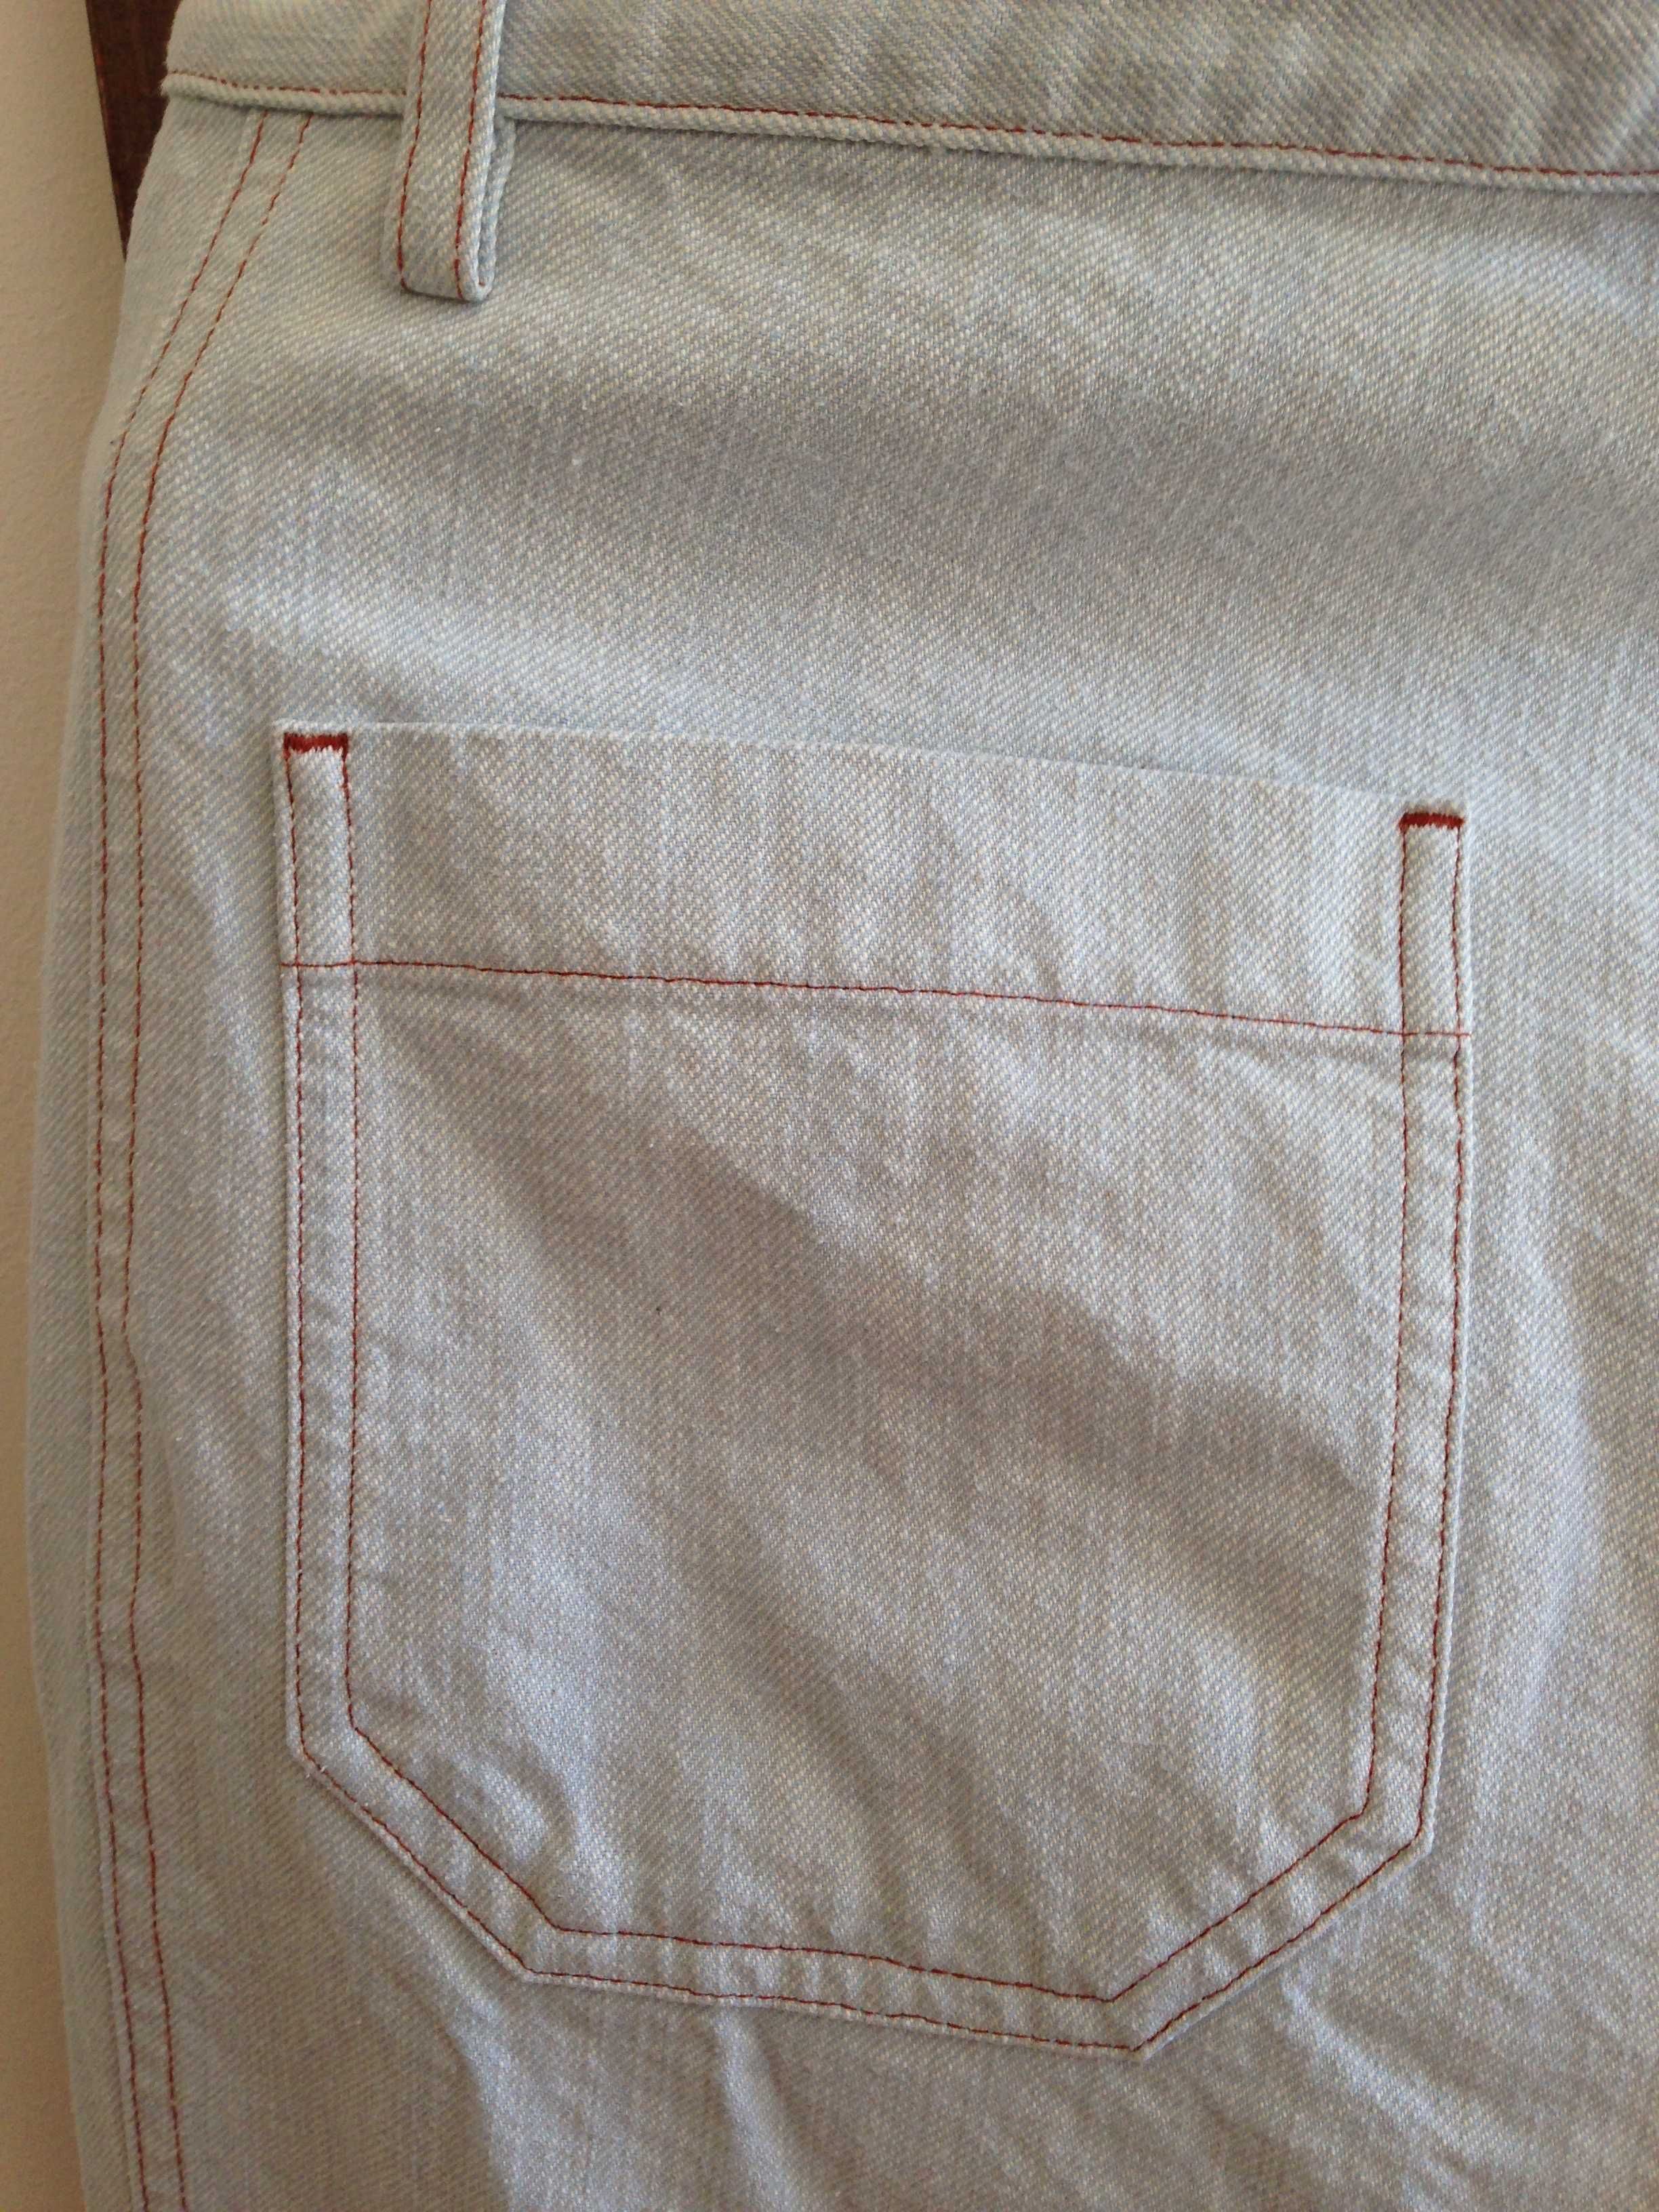 Дамски летни дънки/тип панталон марка  Sessun, Франция.  НОВИ